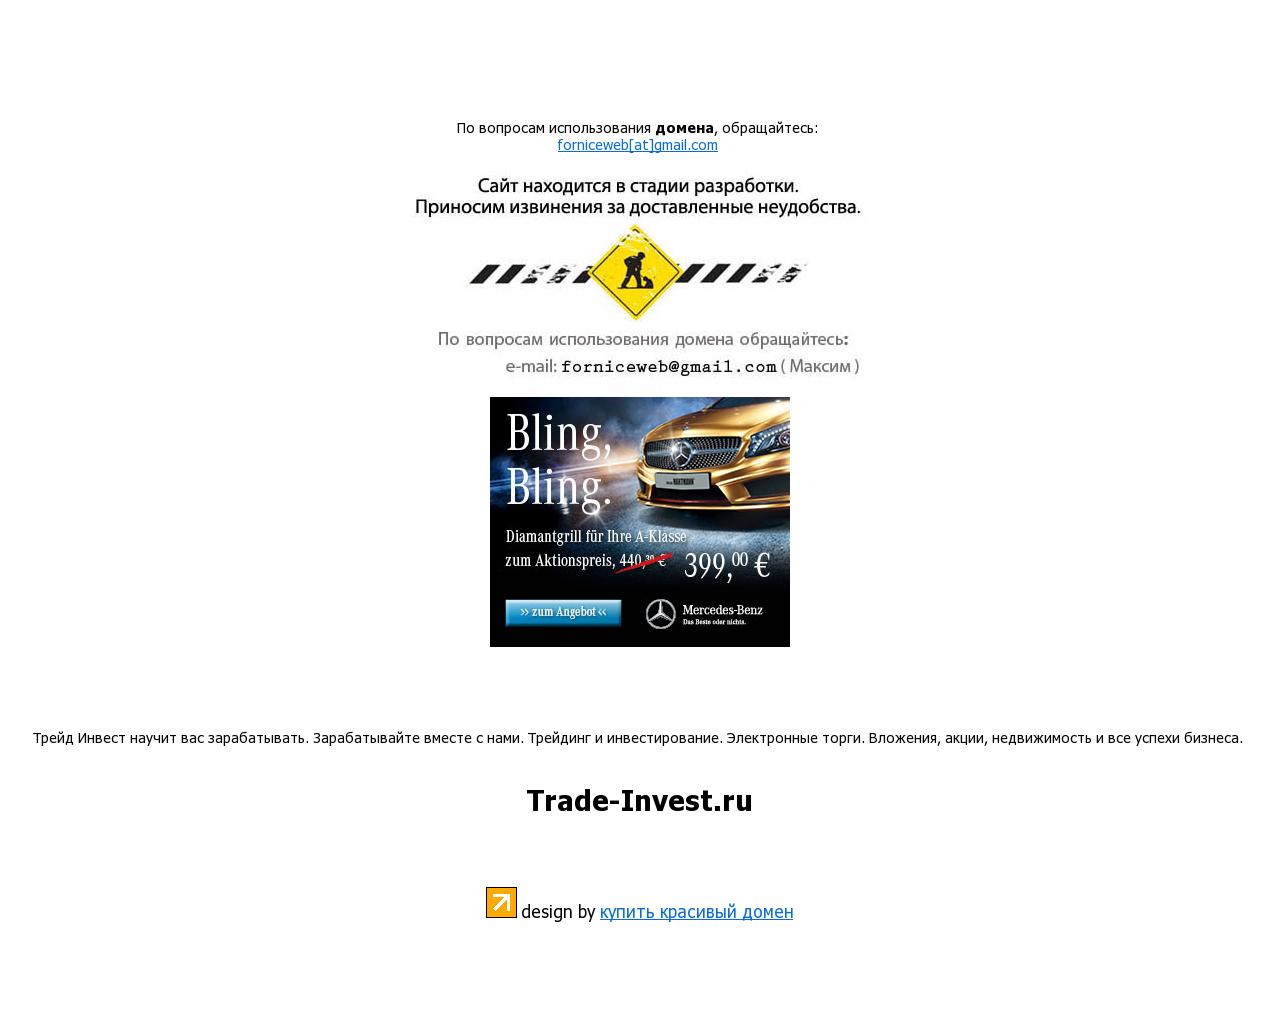 Изображение сайта trade-invest.ru в разрешении 1280x1024